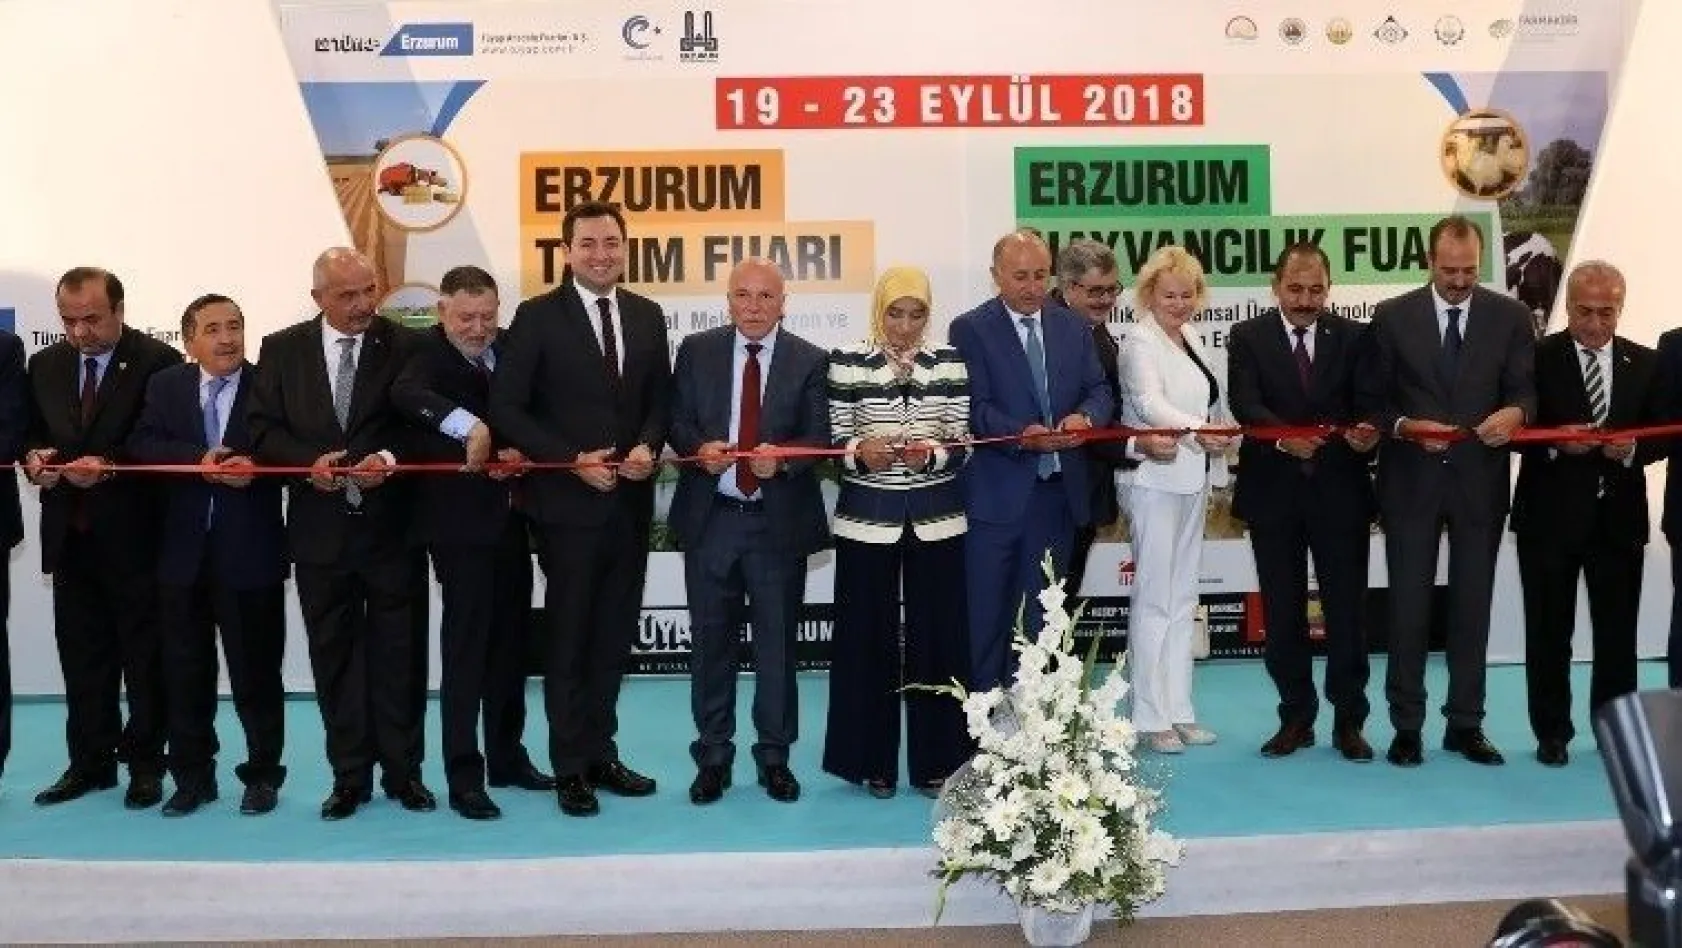 Tarım ve Hayvancılık Fuarı Erzurum'da açıldı
